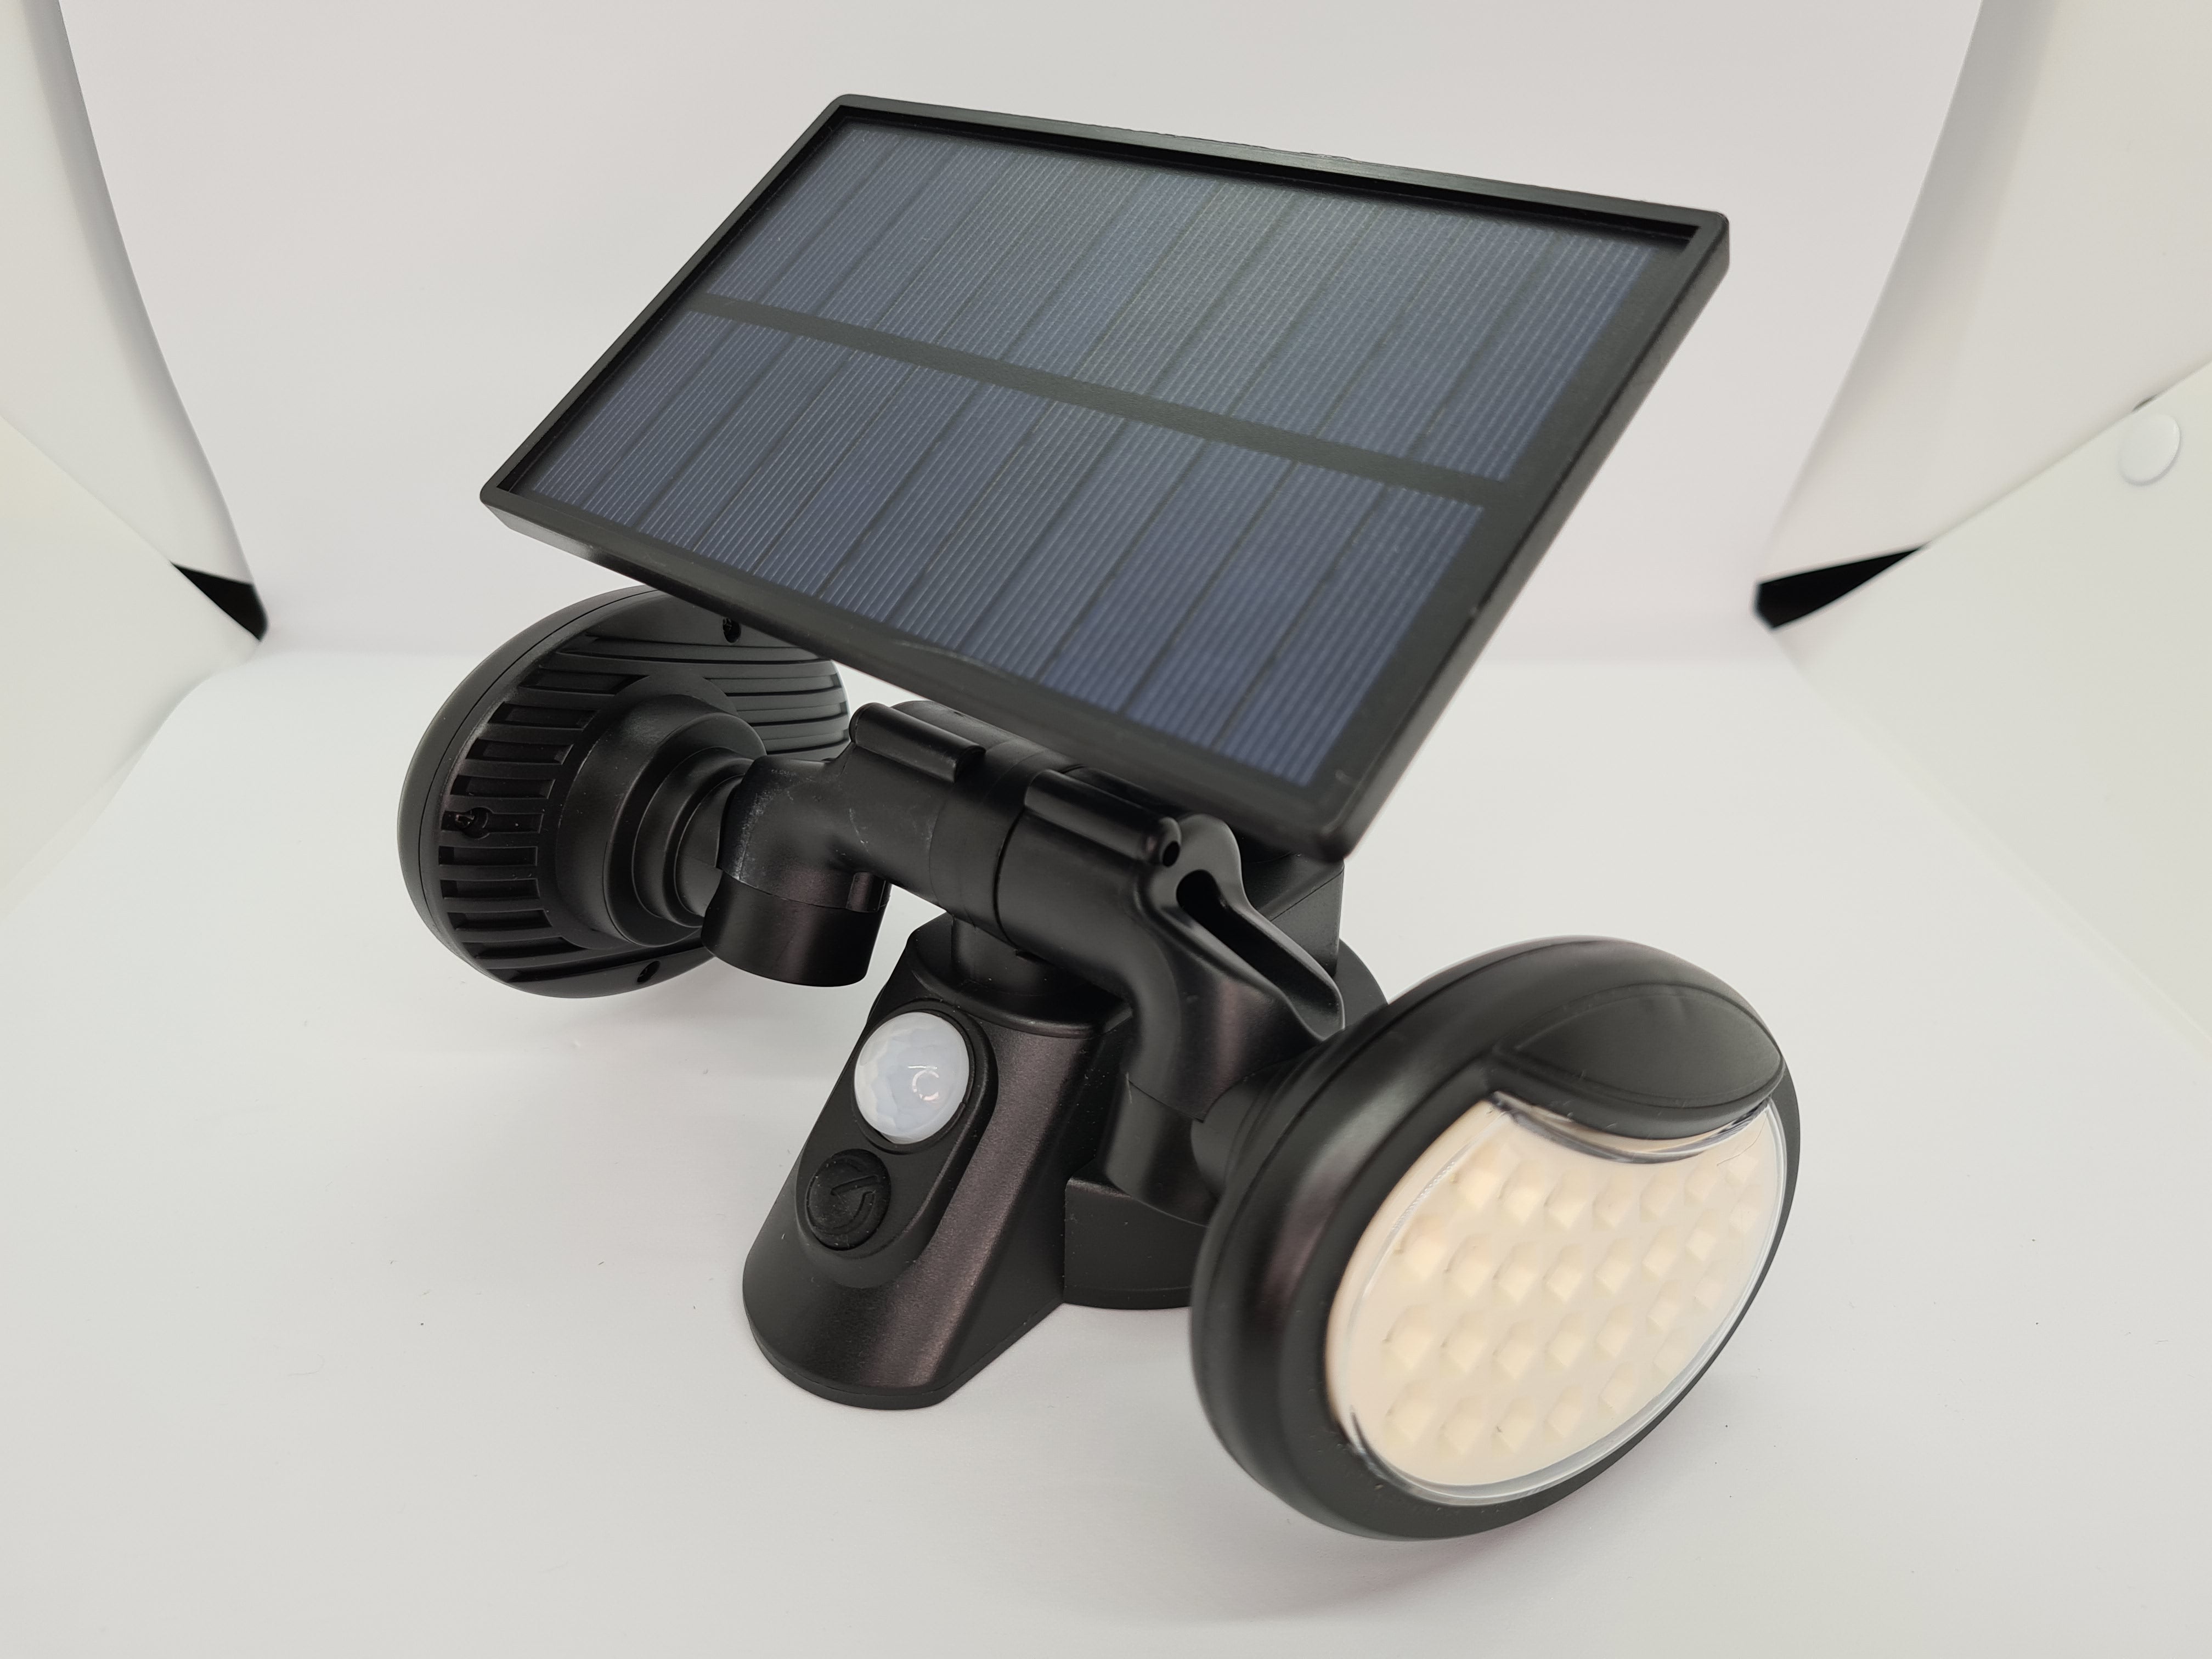 Lampa cu incarcare Solara 150W Leduri COB Senzor de Miscare Generatie Noua FLY03